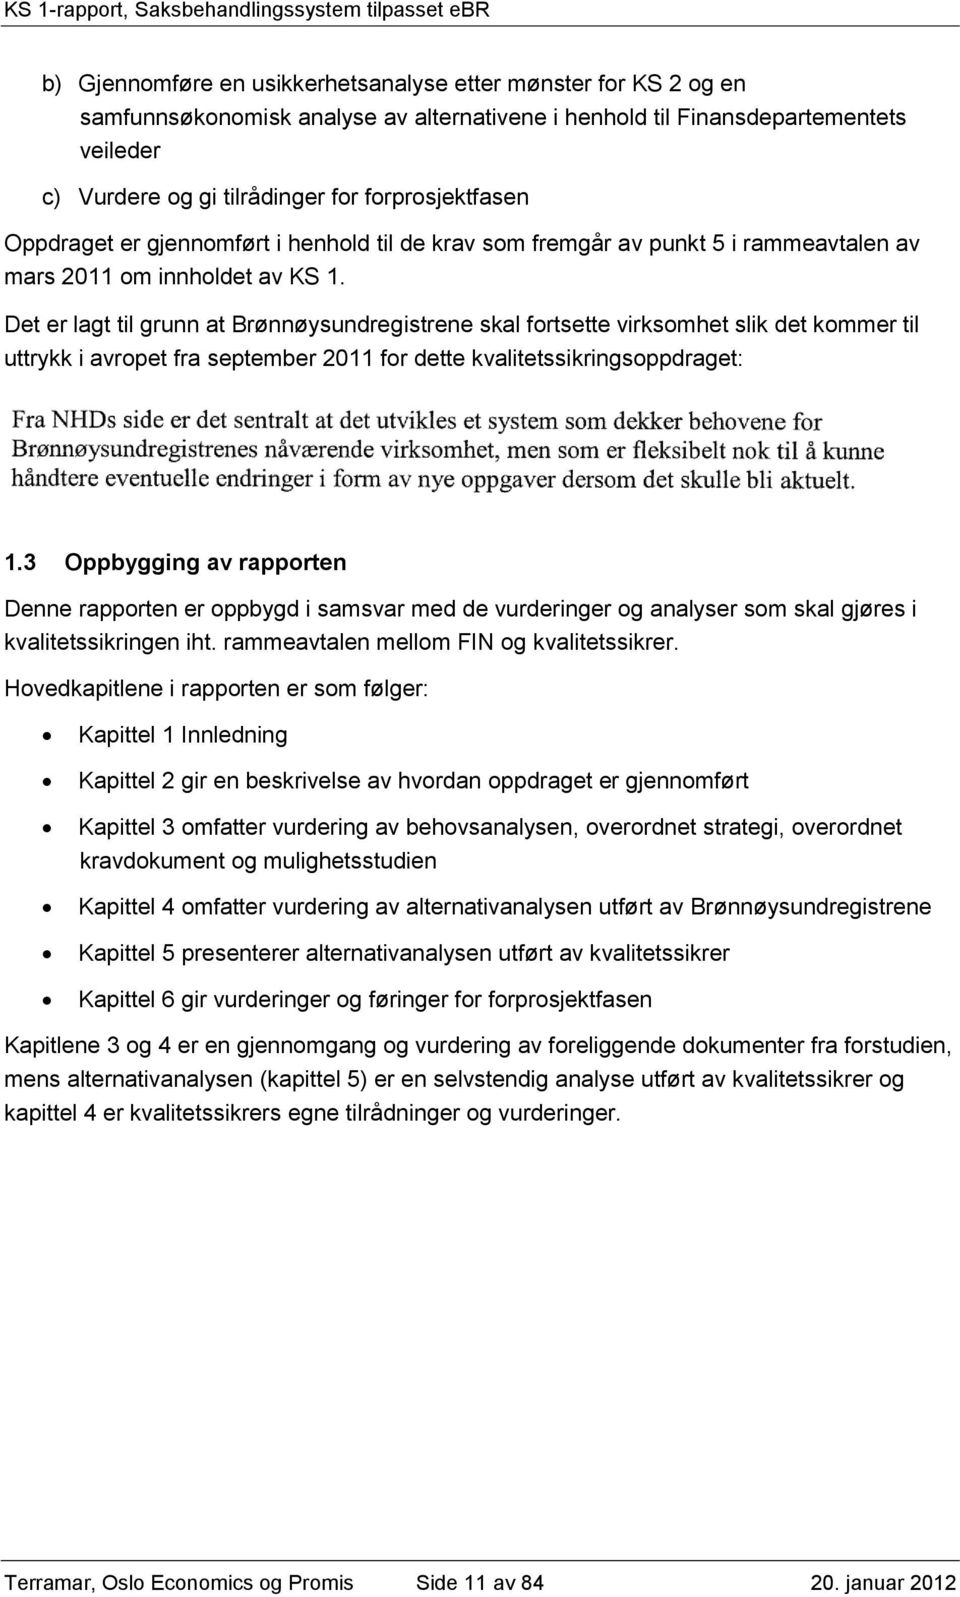 Det er lagt til grunn at Brønnøysundregistrene skal fortsette virksomhet slik det kommer til uttrykk i avropet fra september 2011 for dette kvalitetssikringsoppdraget: Fra NHDs side er det sentralt